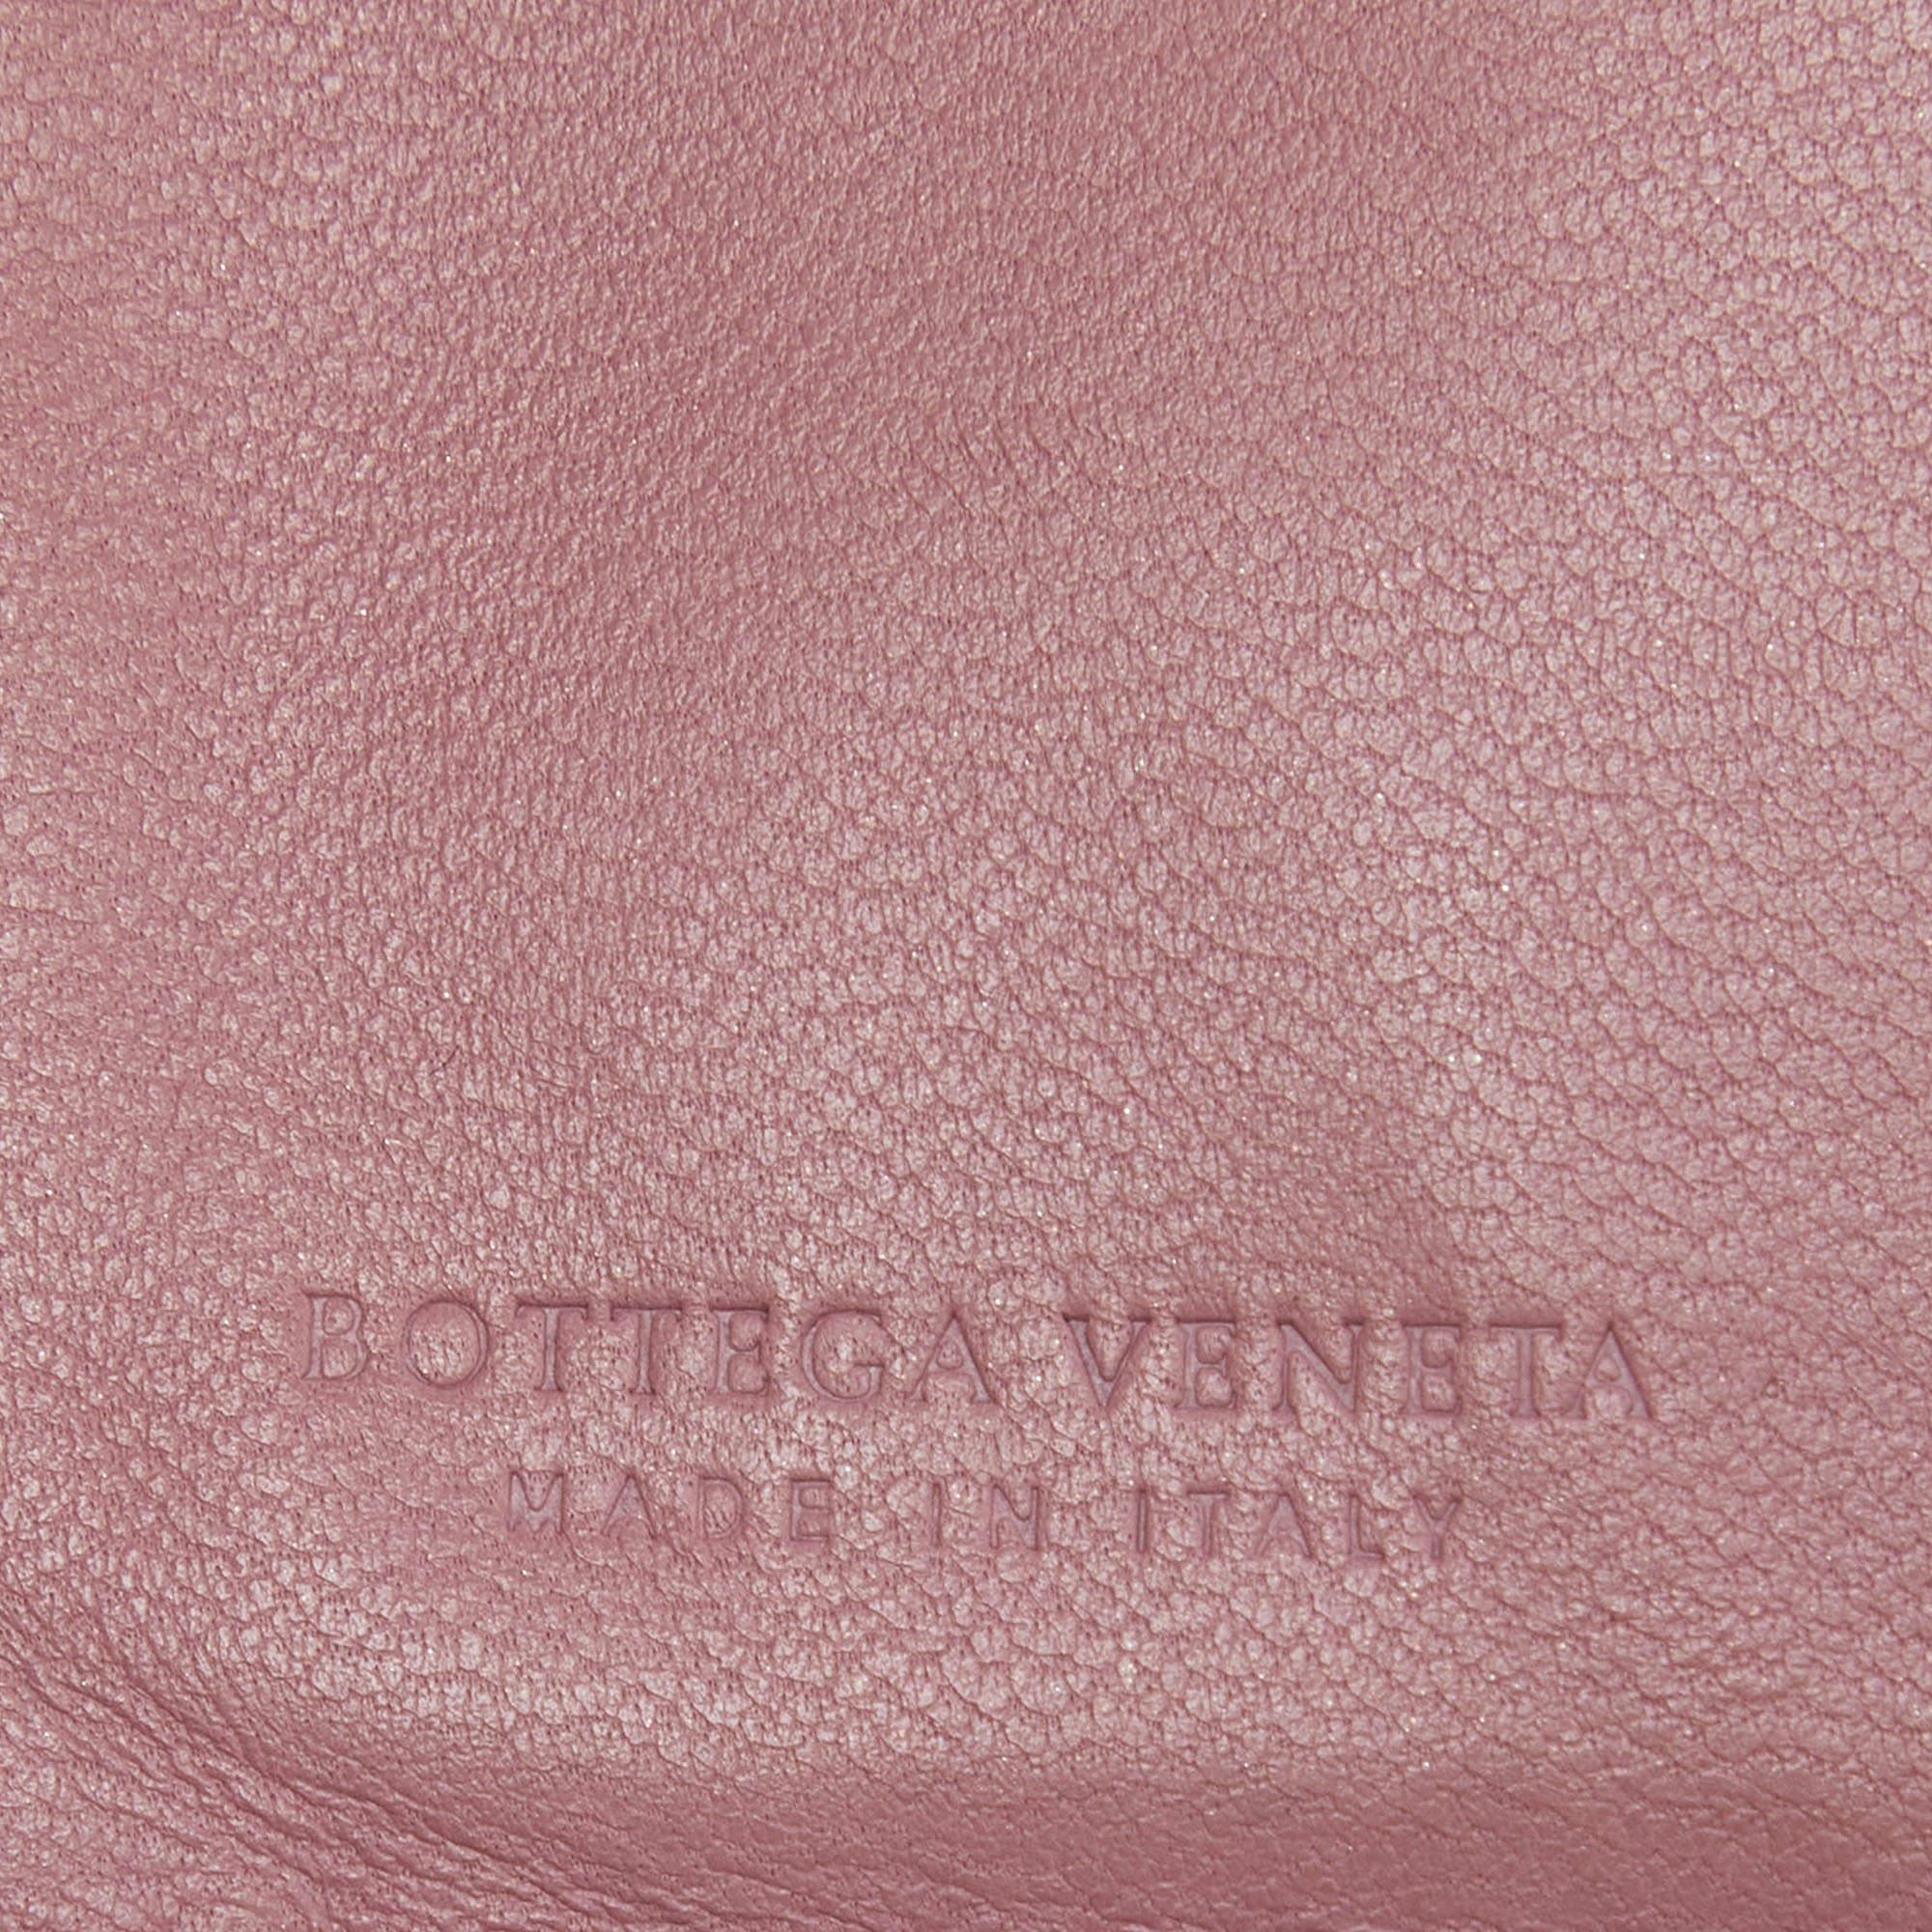 Ce portefeuille français de Bottega Veneta a été réalisé en cuir et est orné d'un tissage intrecciato. Il s'ouvre pour révéler de multiples fentes et compartiments permettant de ranger soigneusement vos cartes et votre argent.

Comprend : Sac à